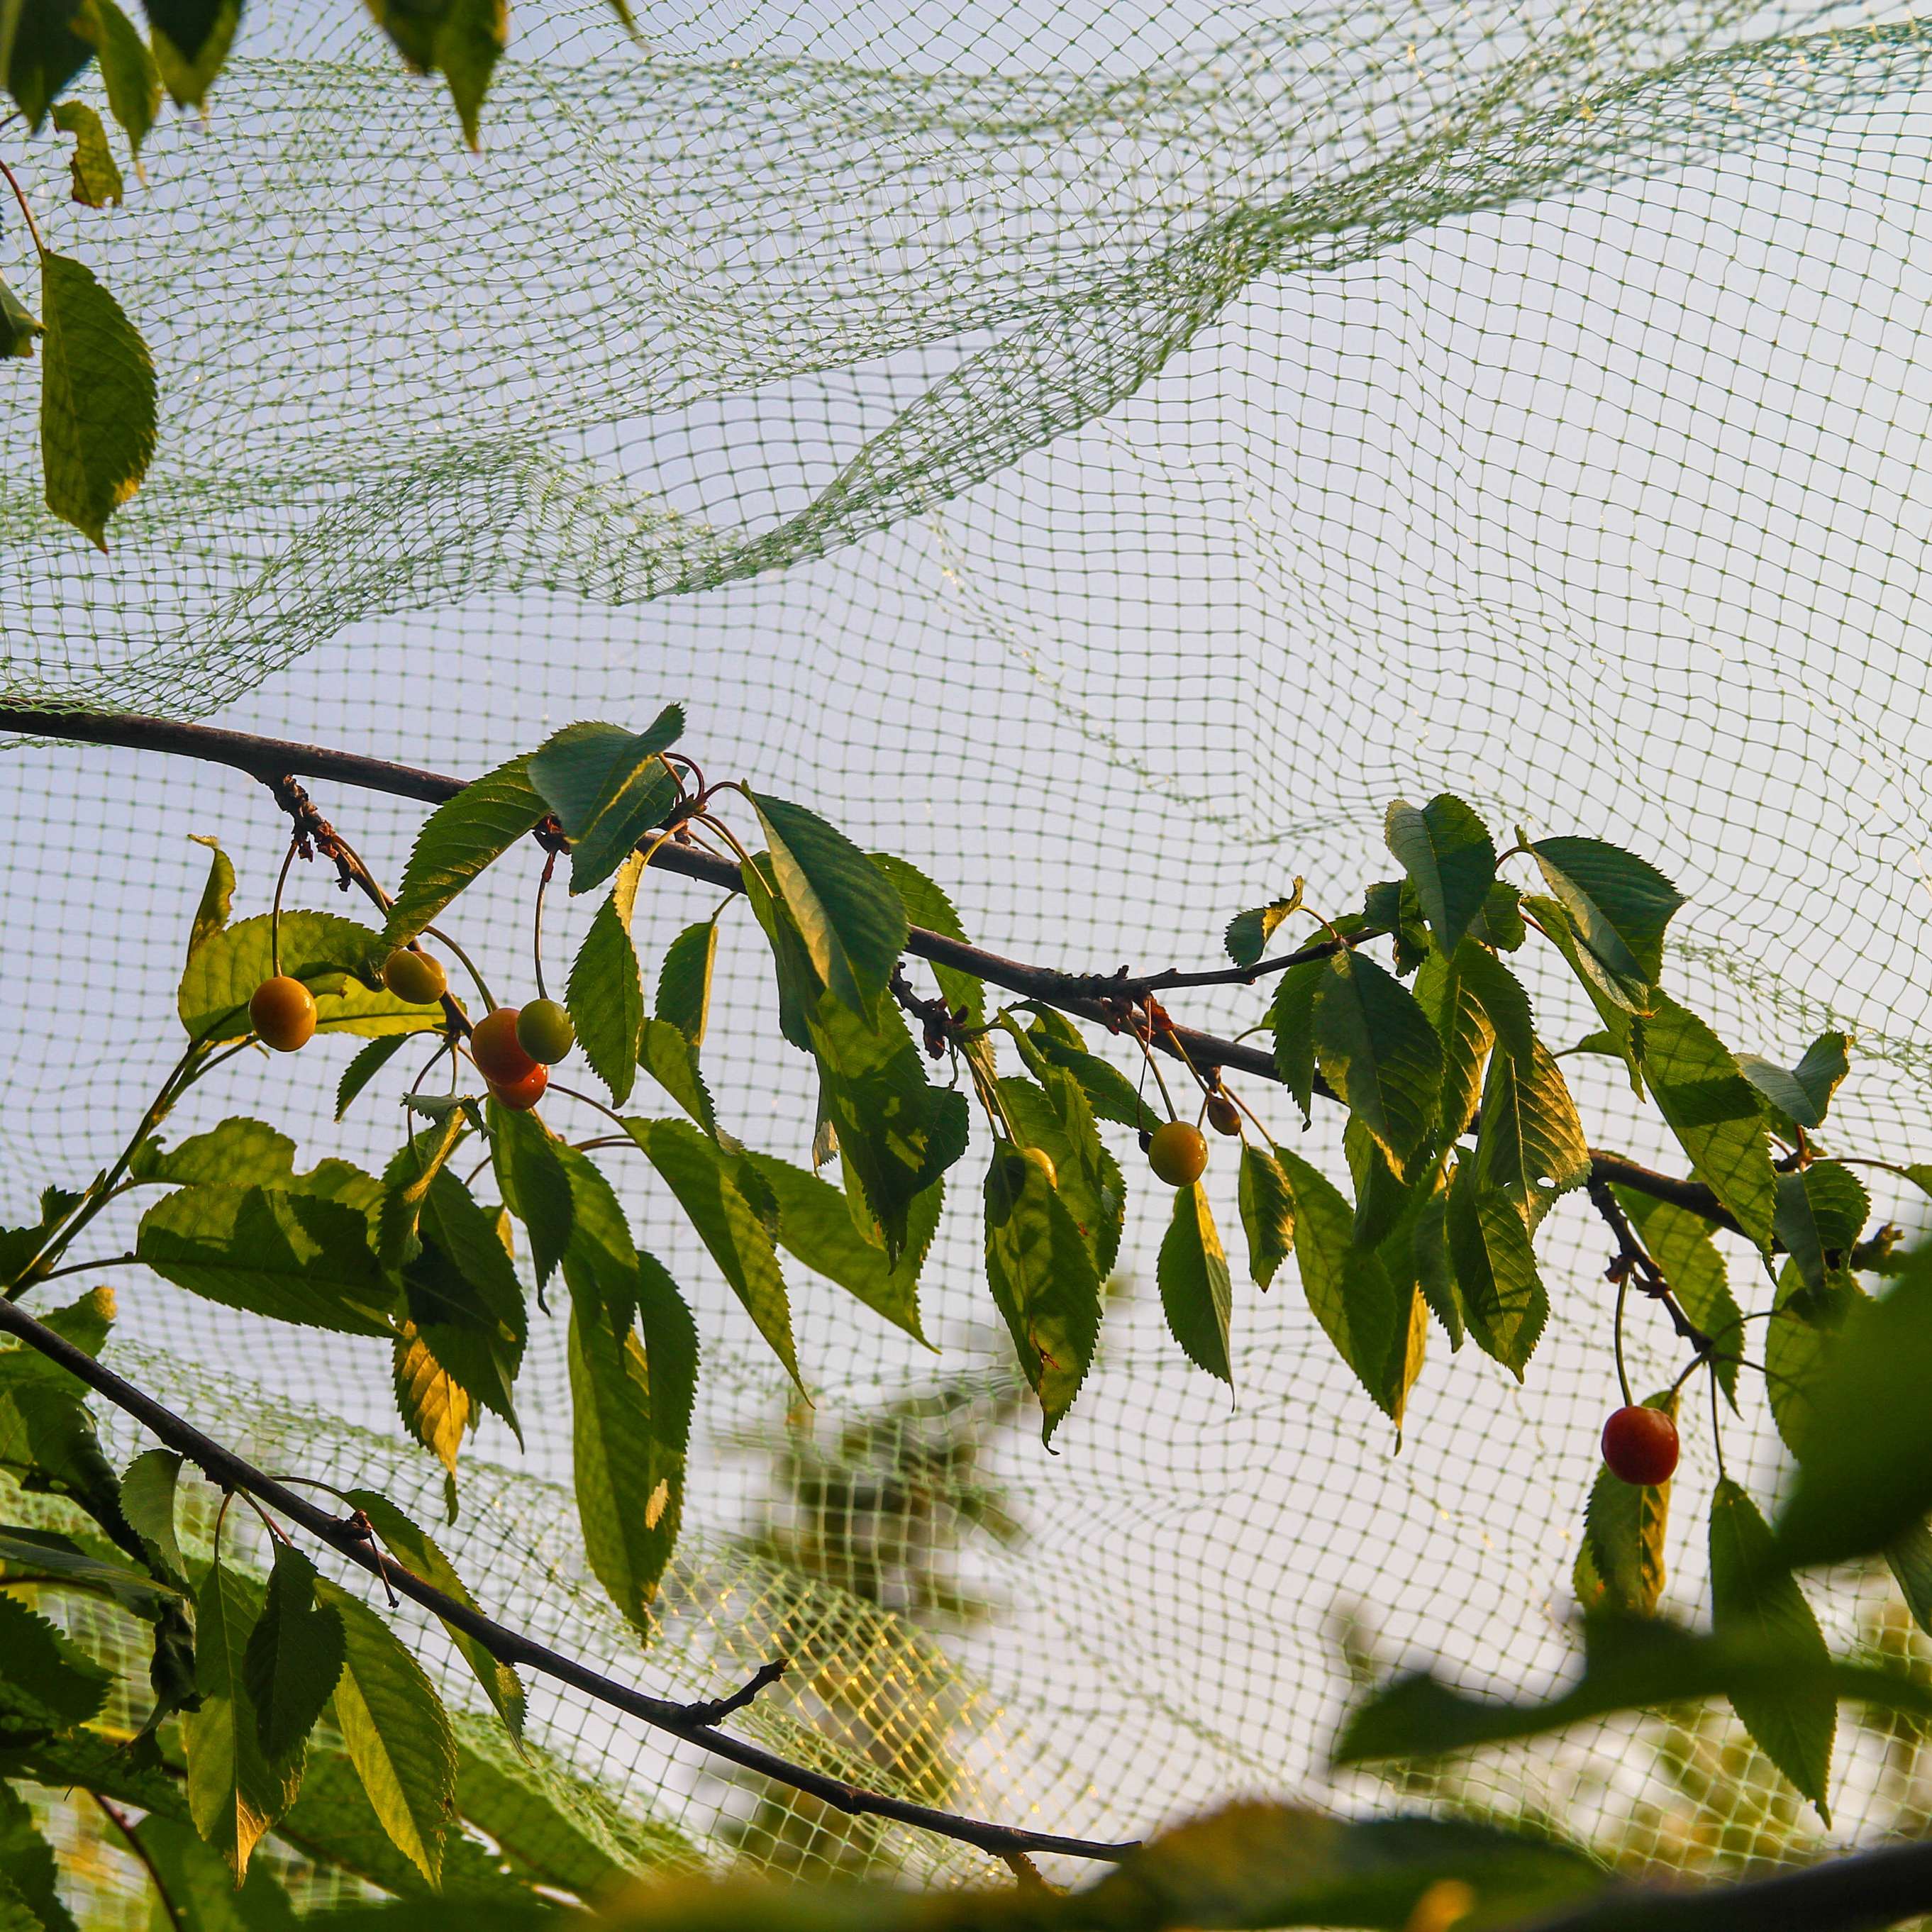 bird netting over cherry tree